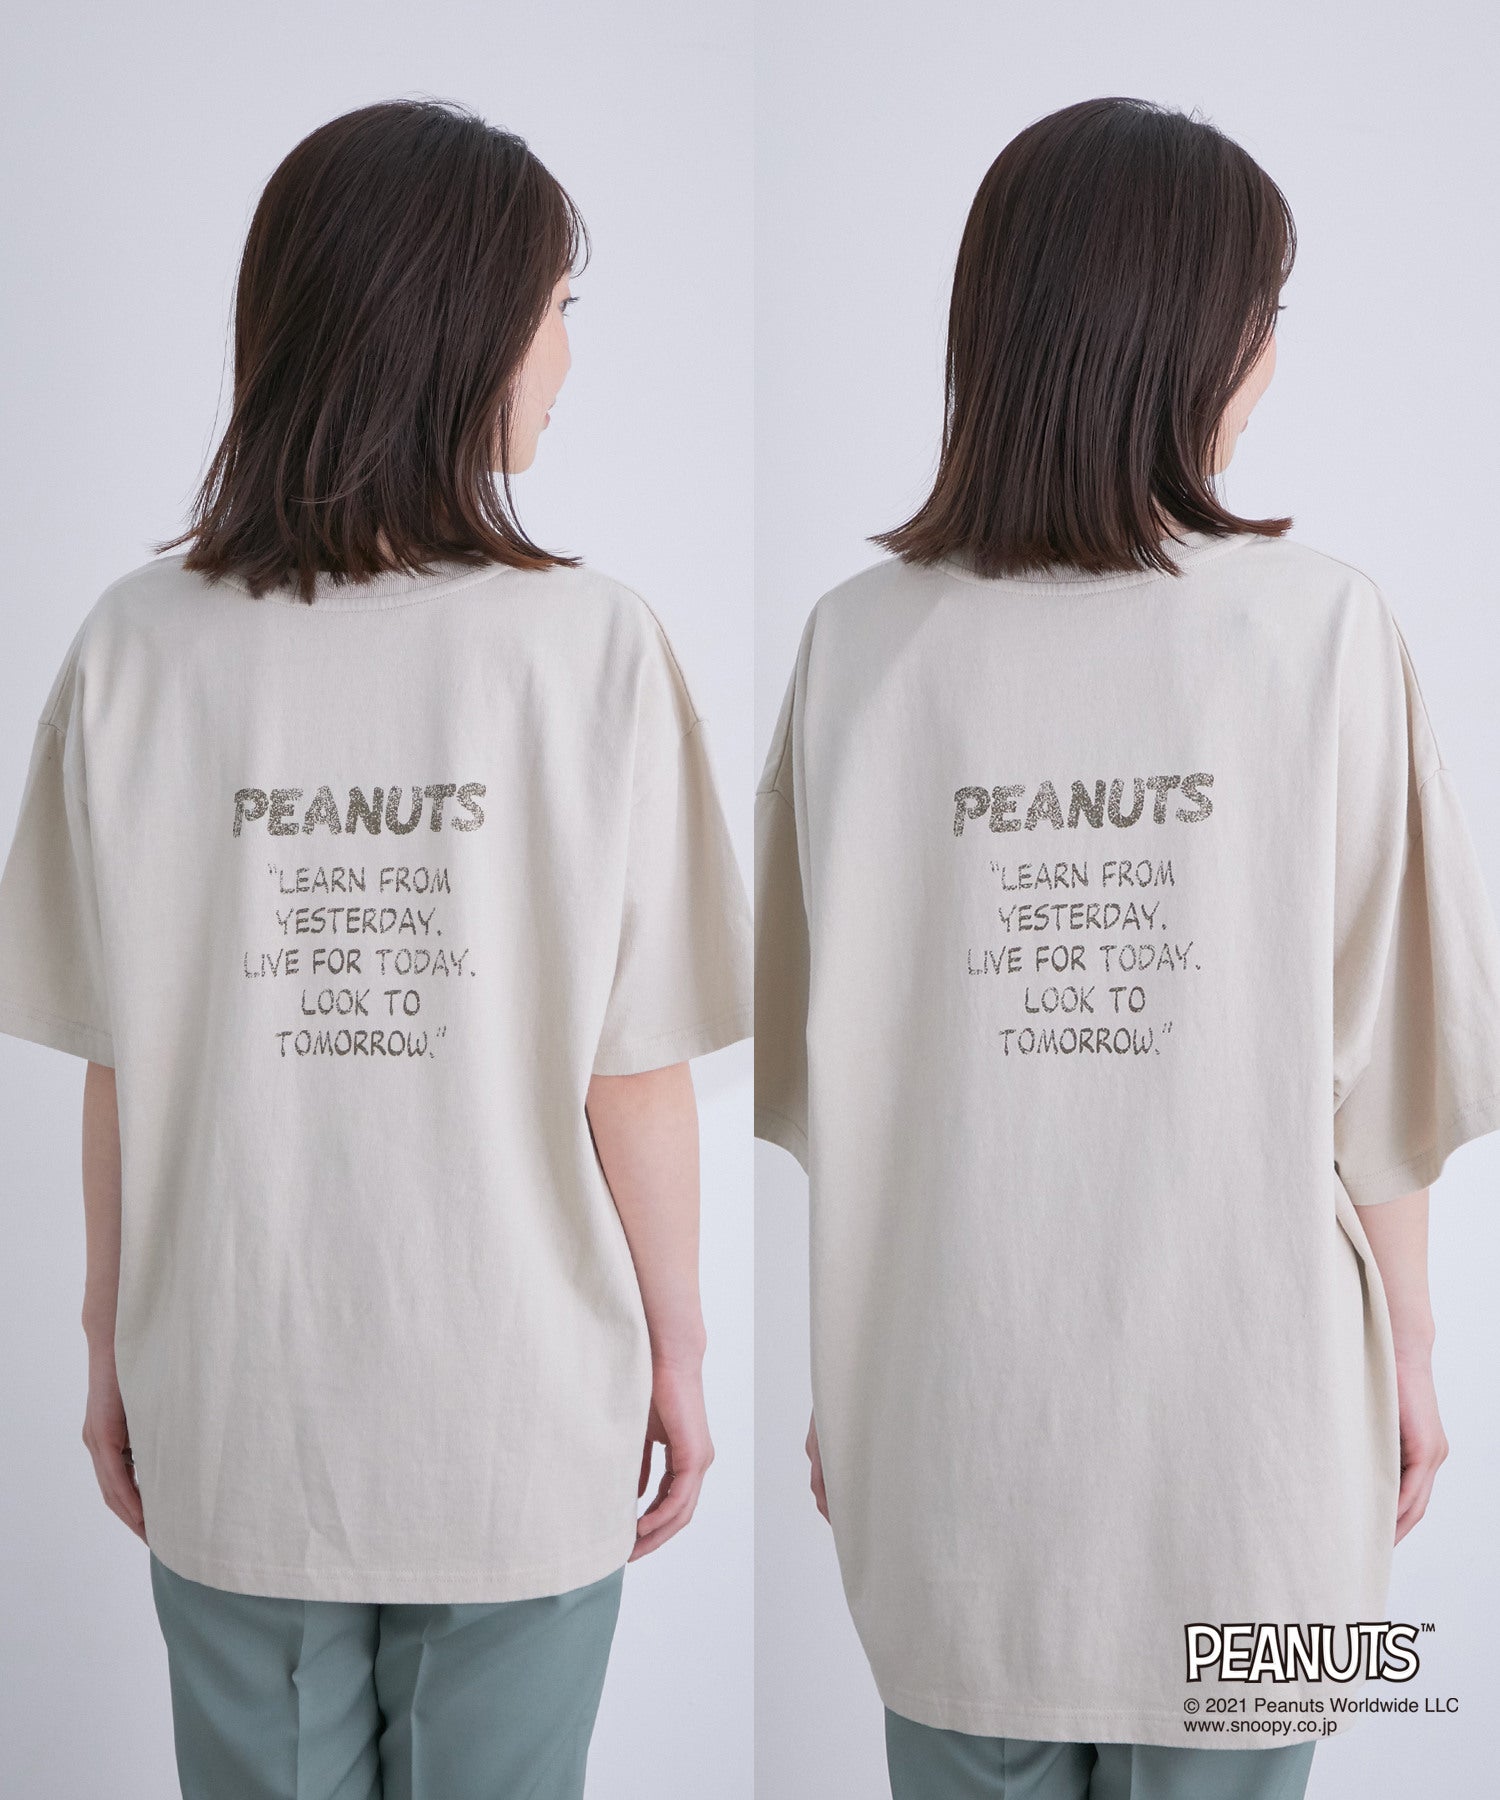 Vis Web限定カラー サイズ有 Peanutsコラボ スポーツプリントtシャツ トップス Tシャツ カットソー 通販 J Adore Jun Online